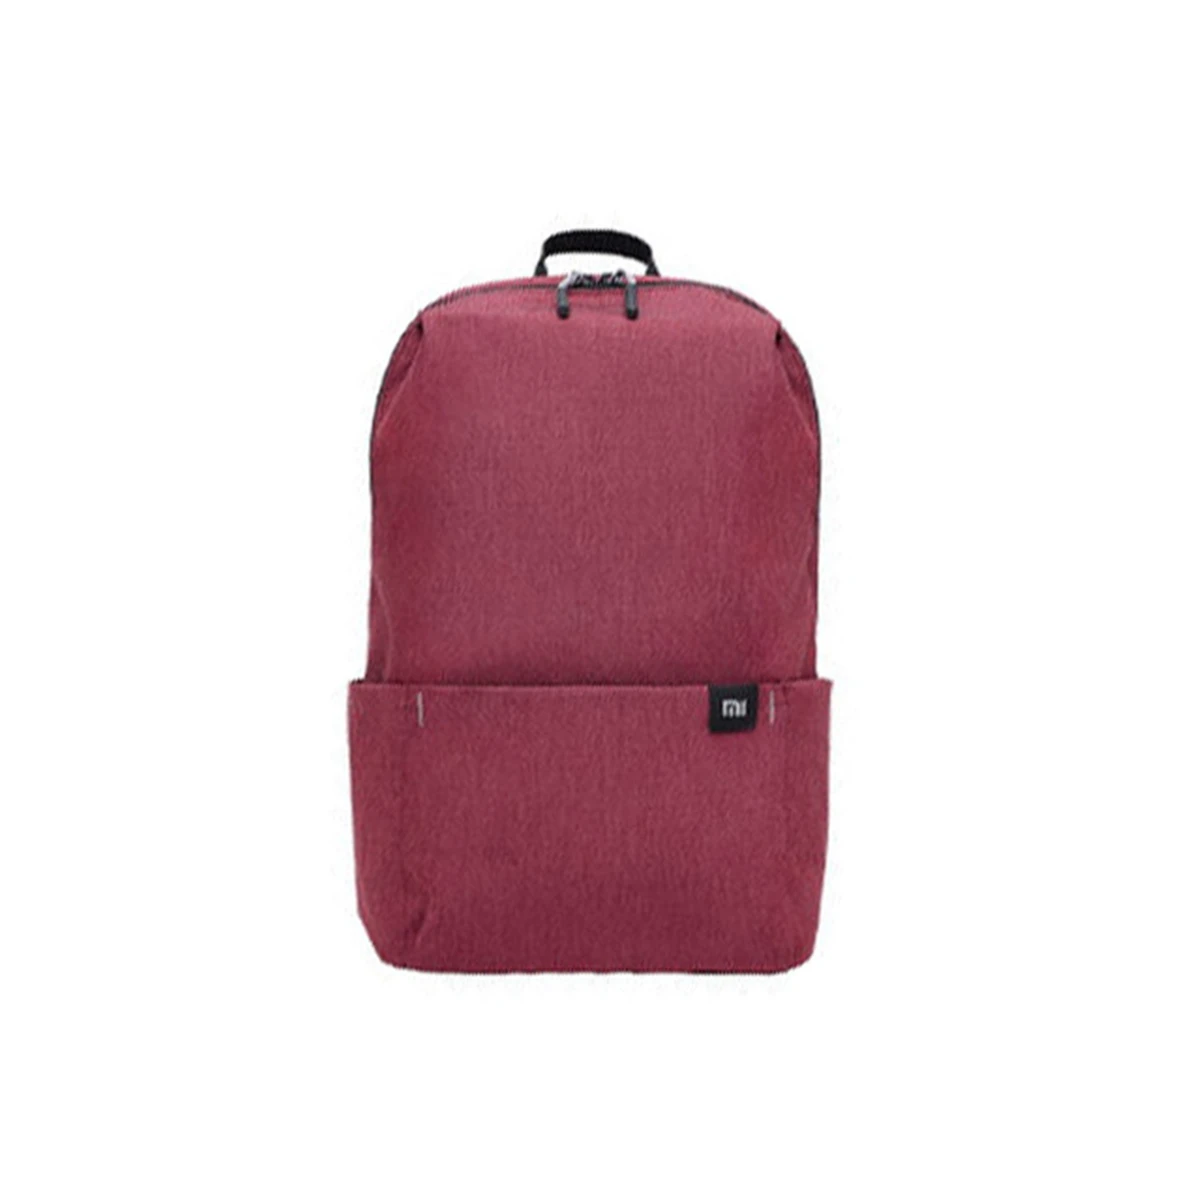 MI 10L рюкзак для мужчин и женщин мини-рюкзак 8 цветов маленькая Водонепроницаемая нейлоновая сумка на молнии для путешествий Унисекс Рюкзак mochila - Цвет: Бургундия